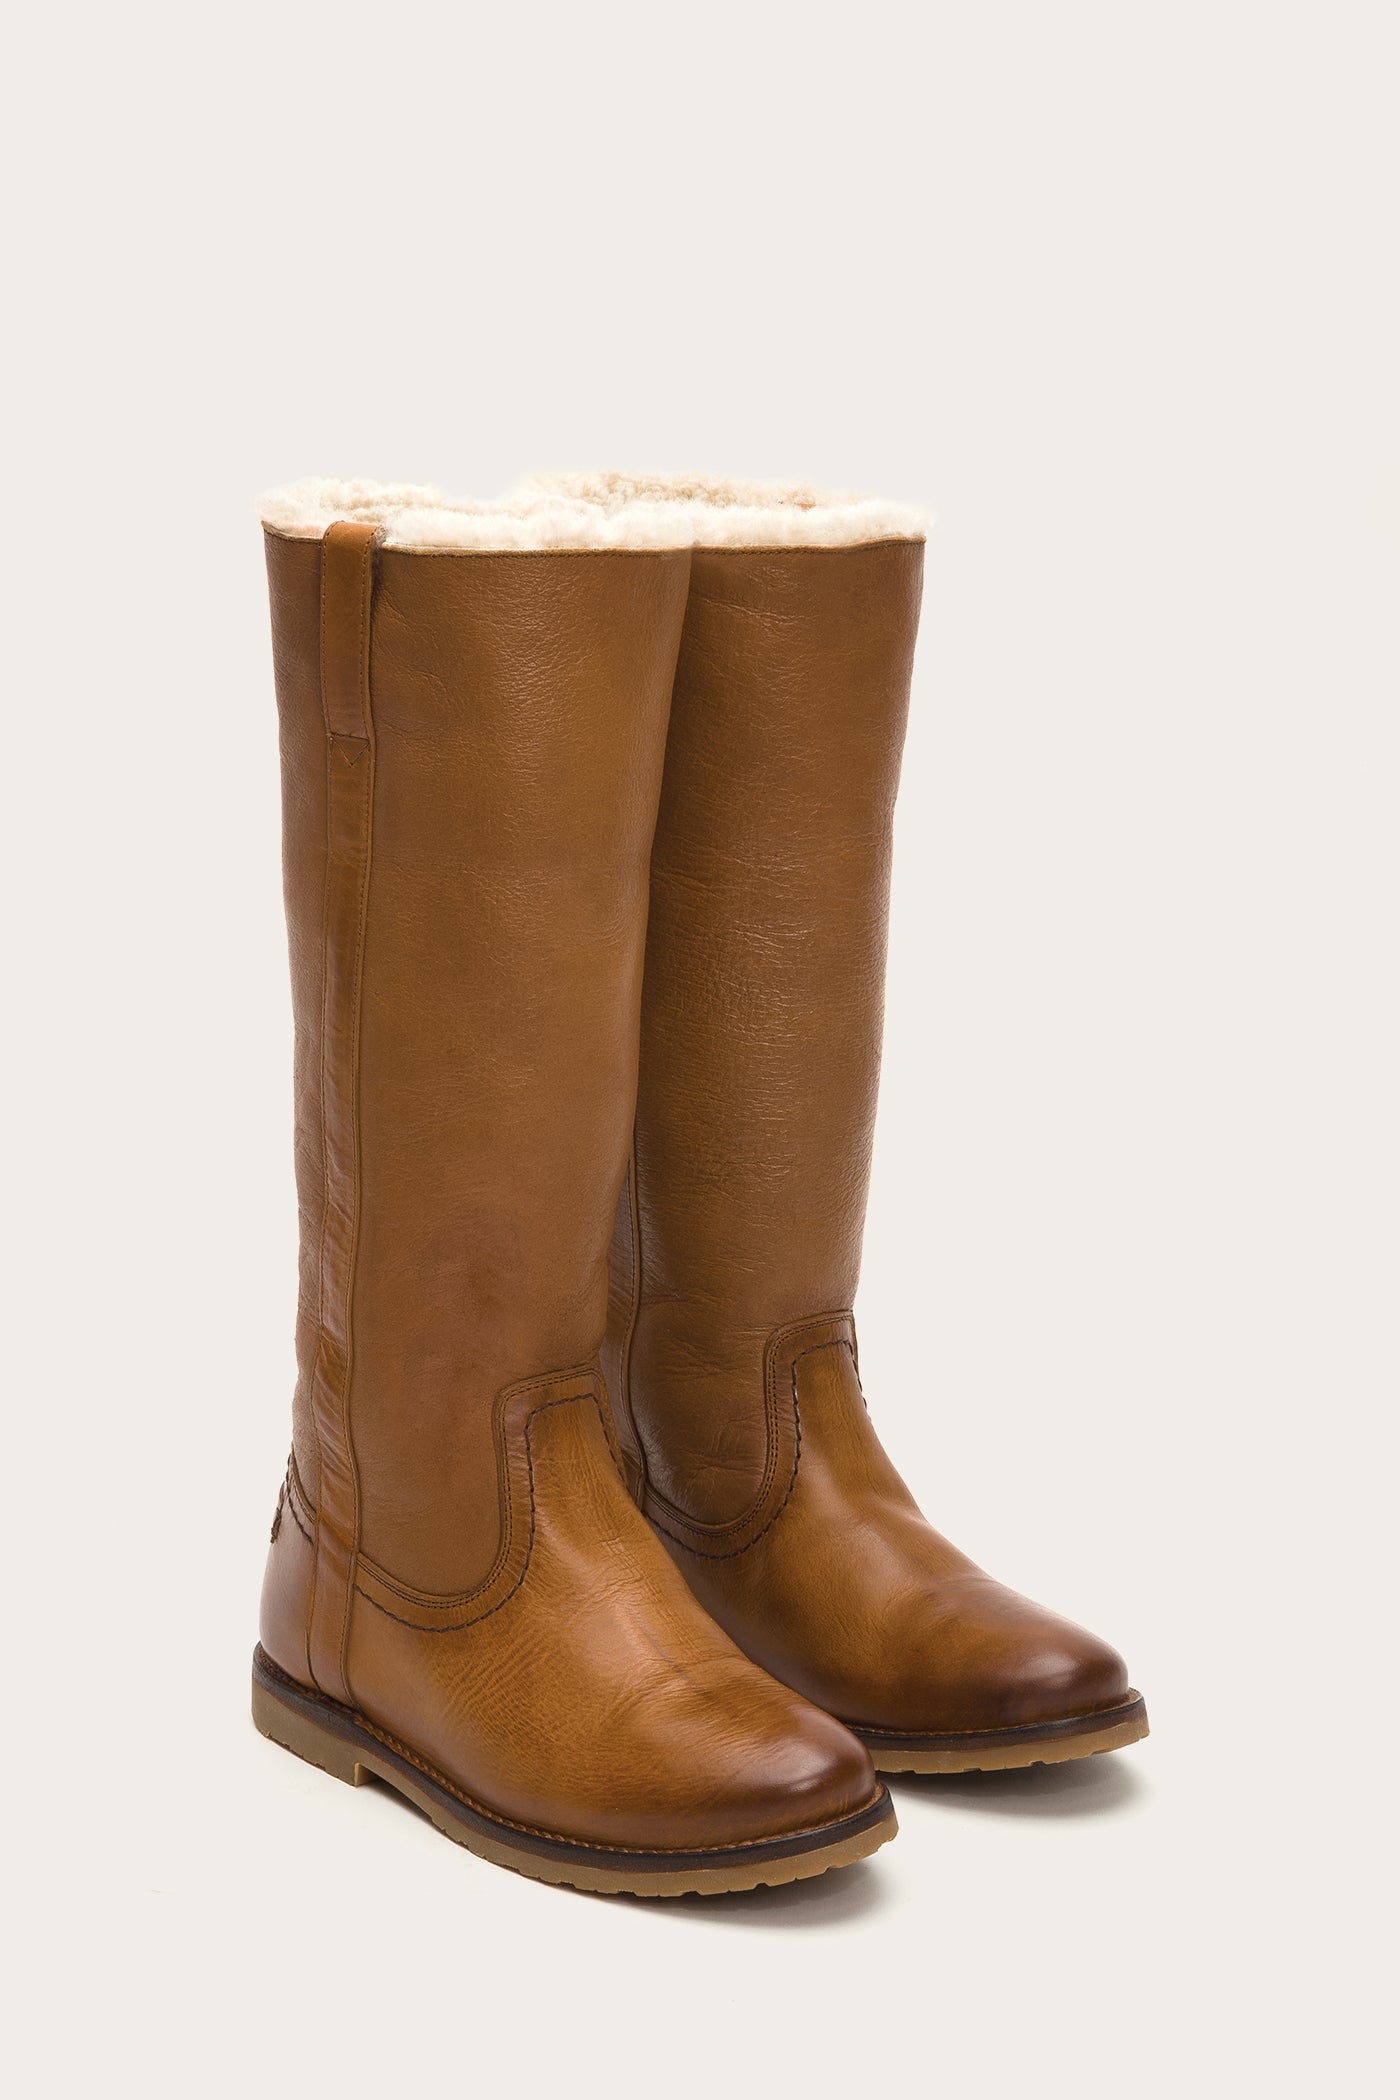 frye fleece lined boots